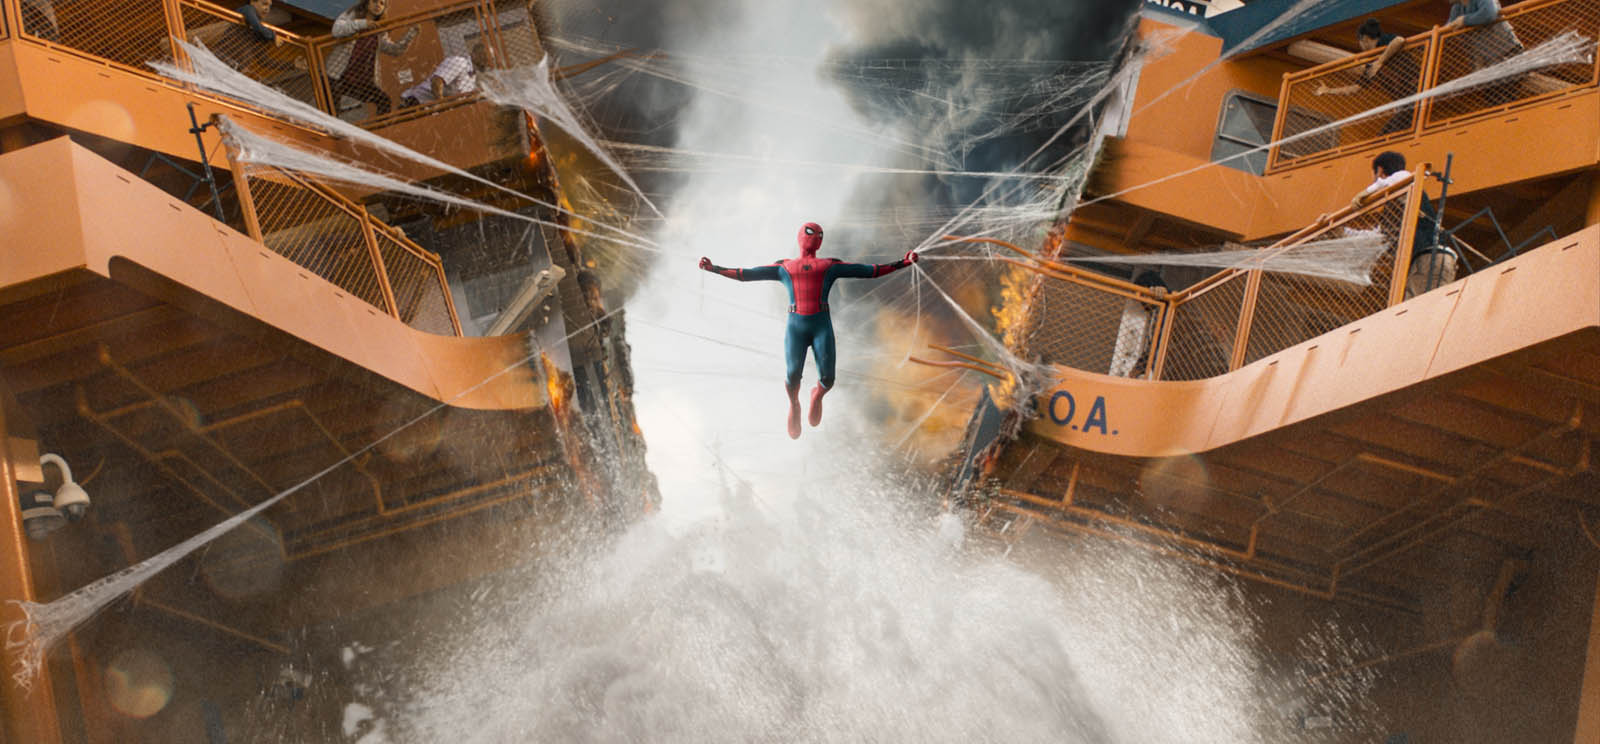 Spider-Man Homecoming – Si l’Art Régnait, Marvel Ferait Moins de Toiles